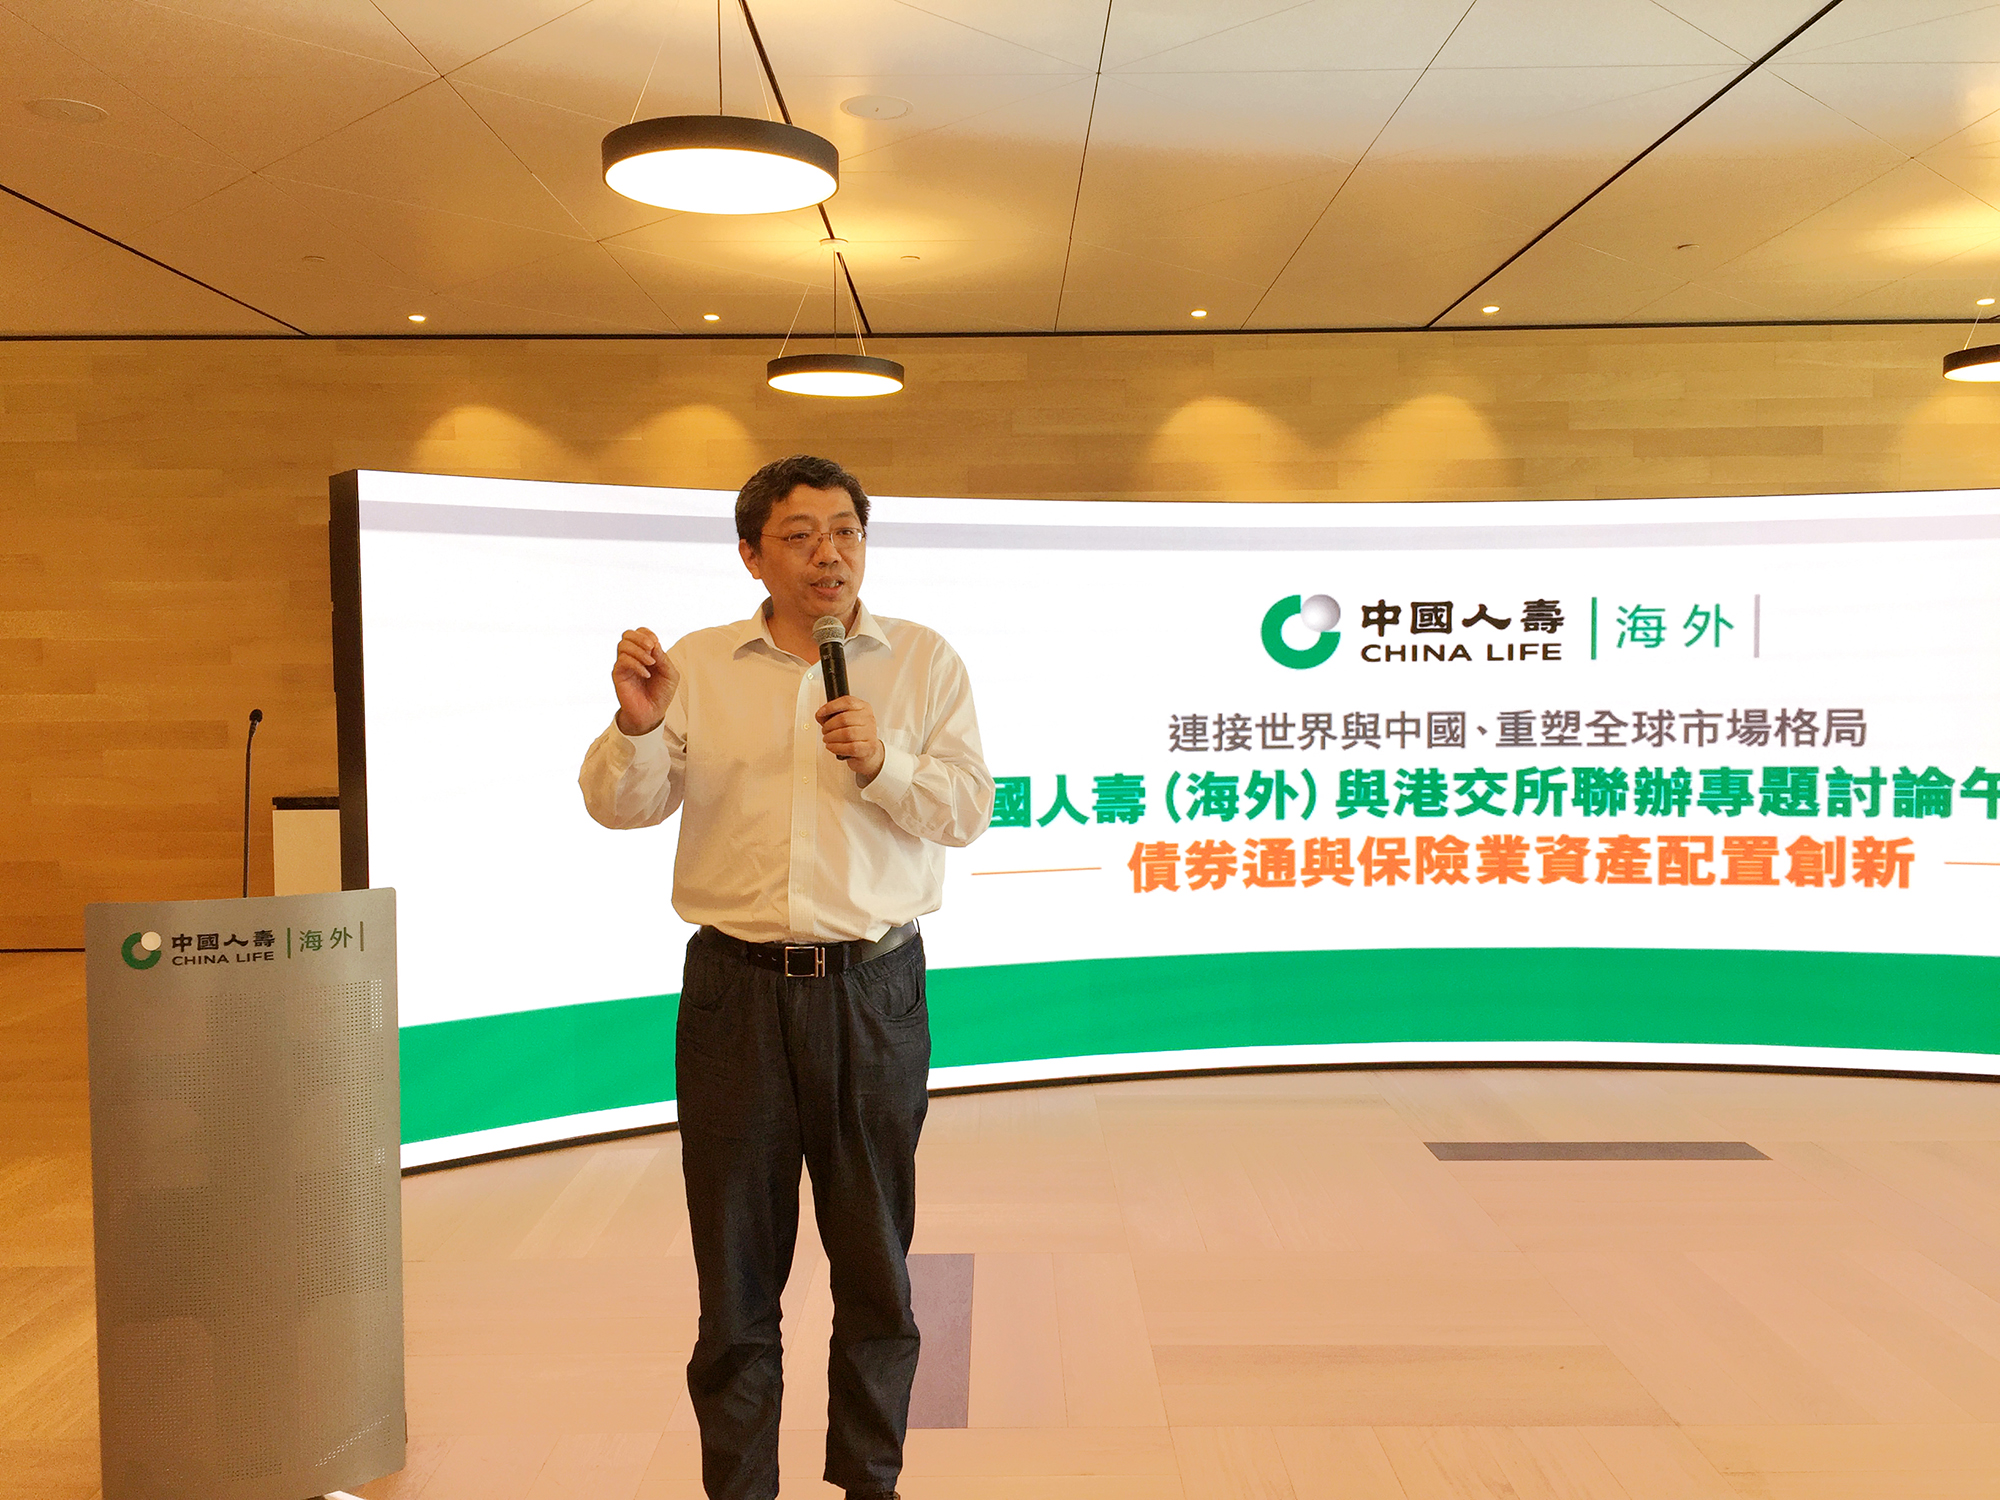 中國人壽（海外）與香港交易所聯辦專題討論午餐會 共同探討香港金融市場發展新動力